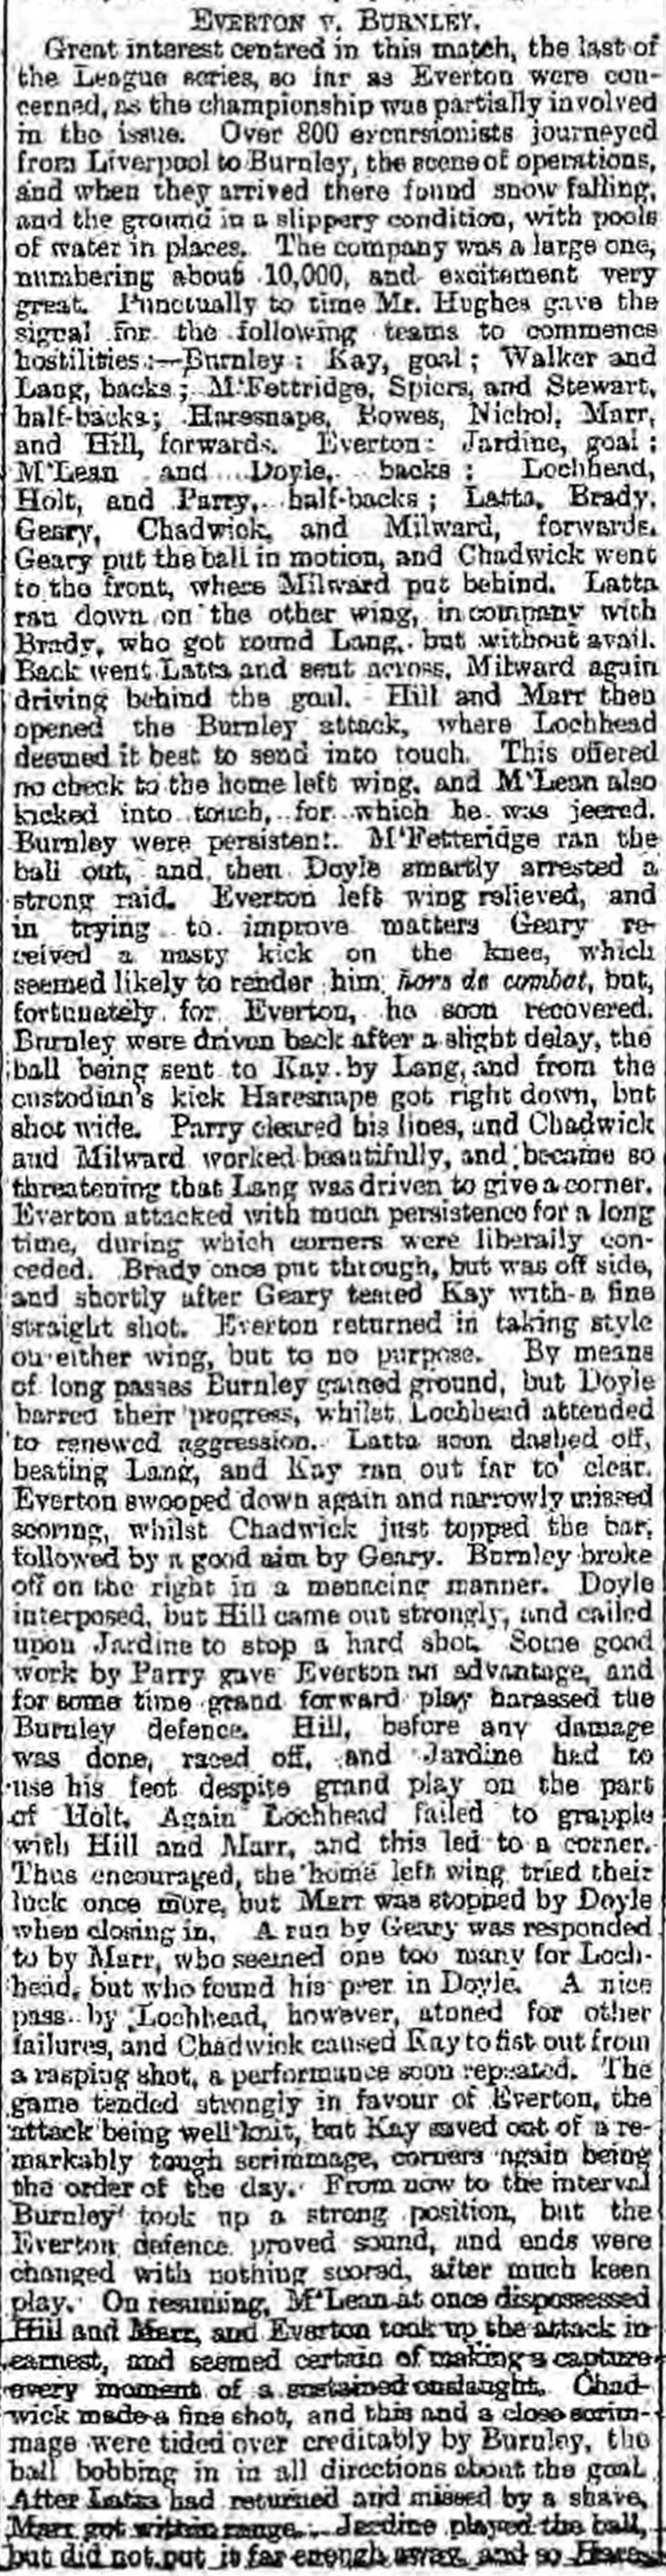 evertons-league-winning-match-report-part-1-1890-91-liverpool-mercury